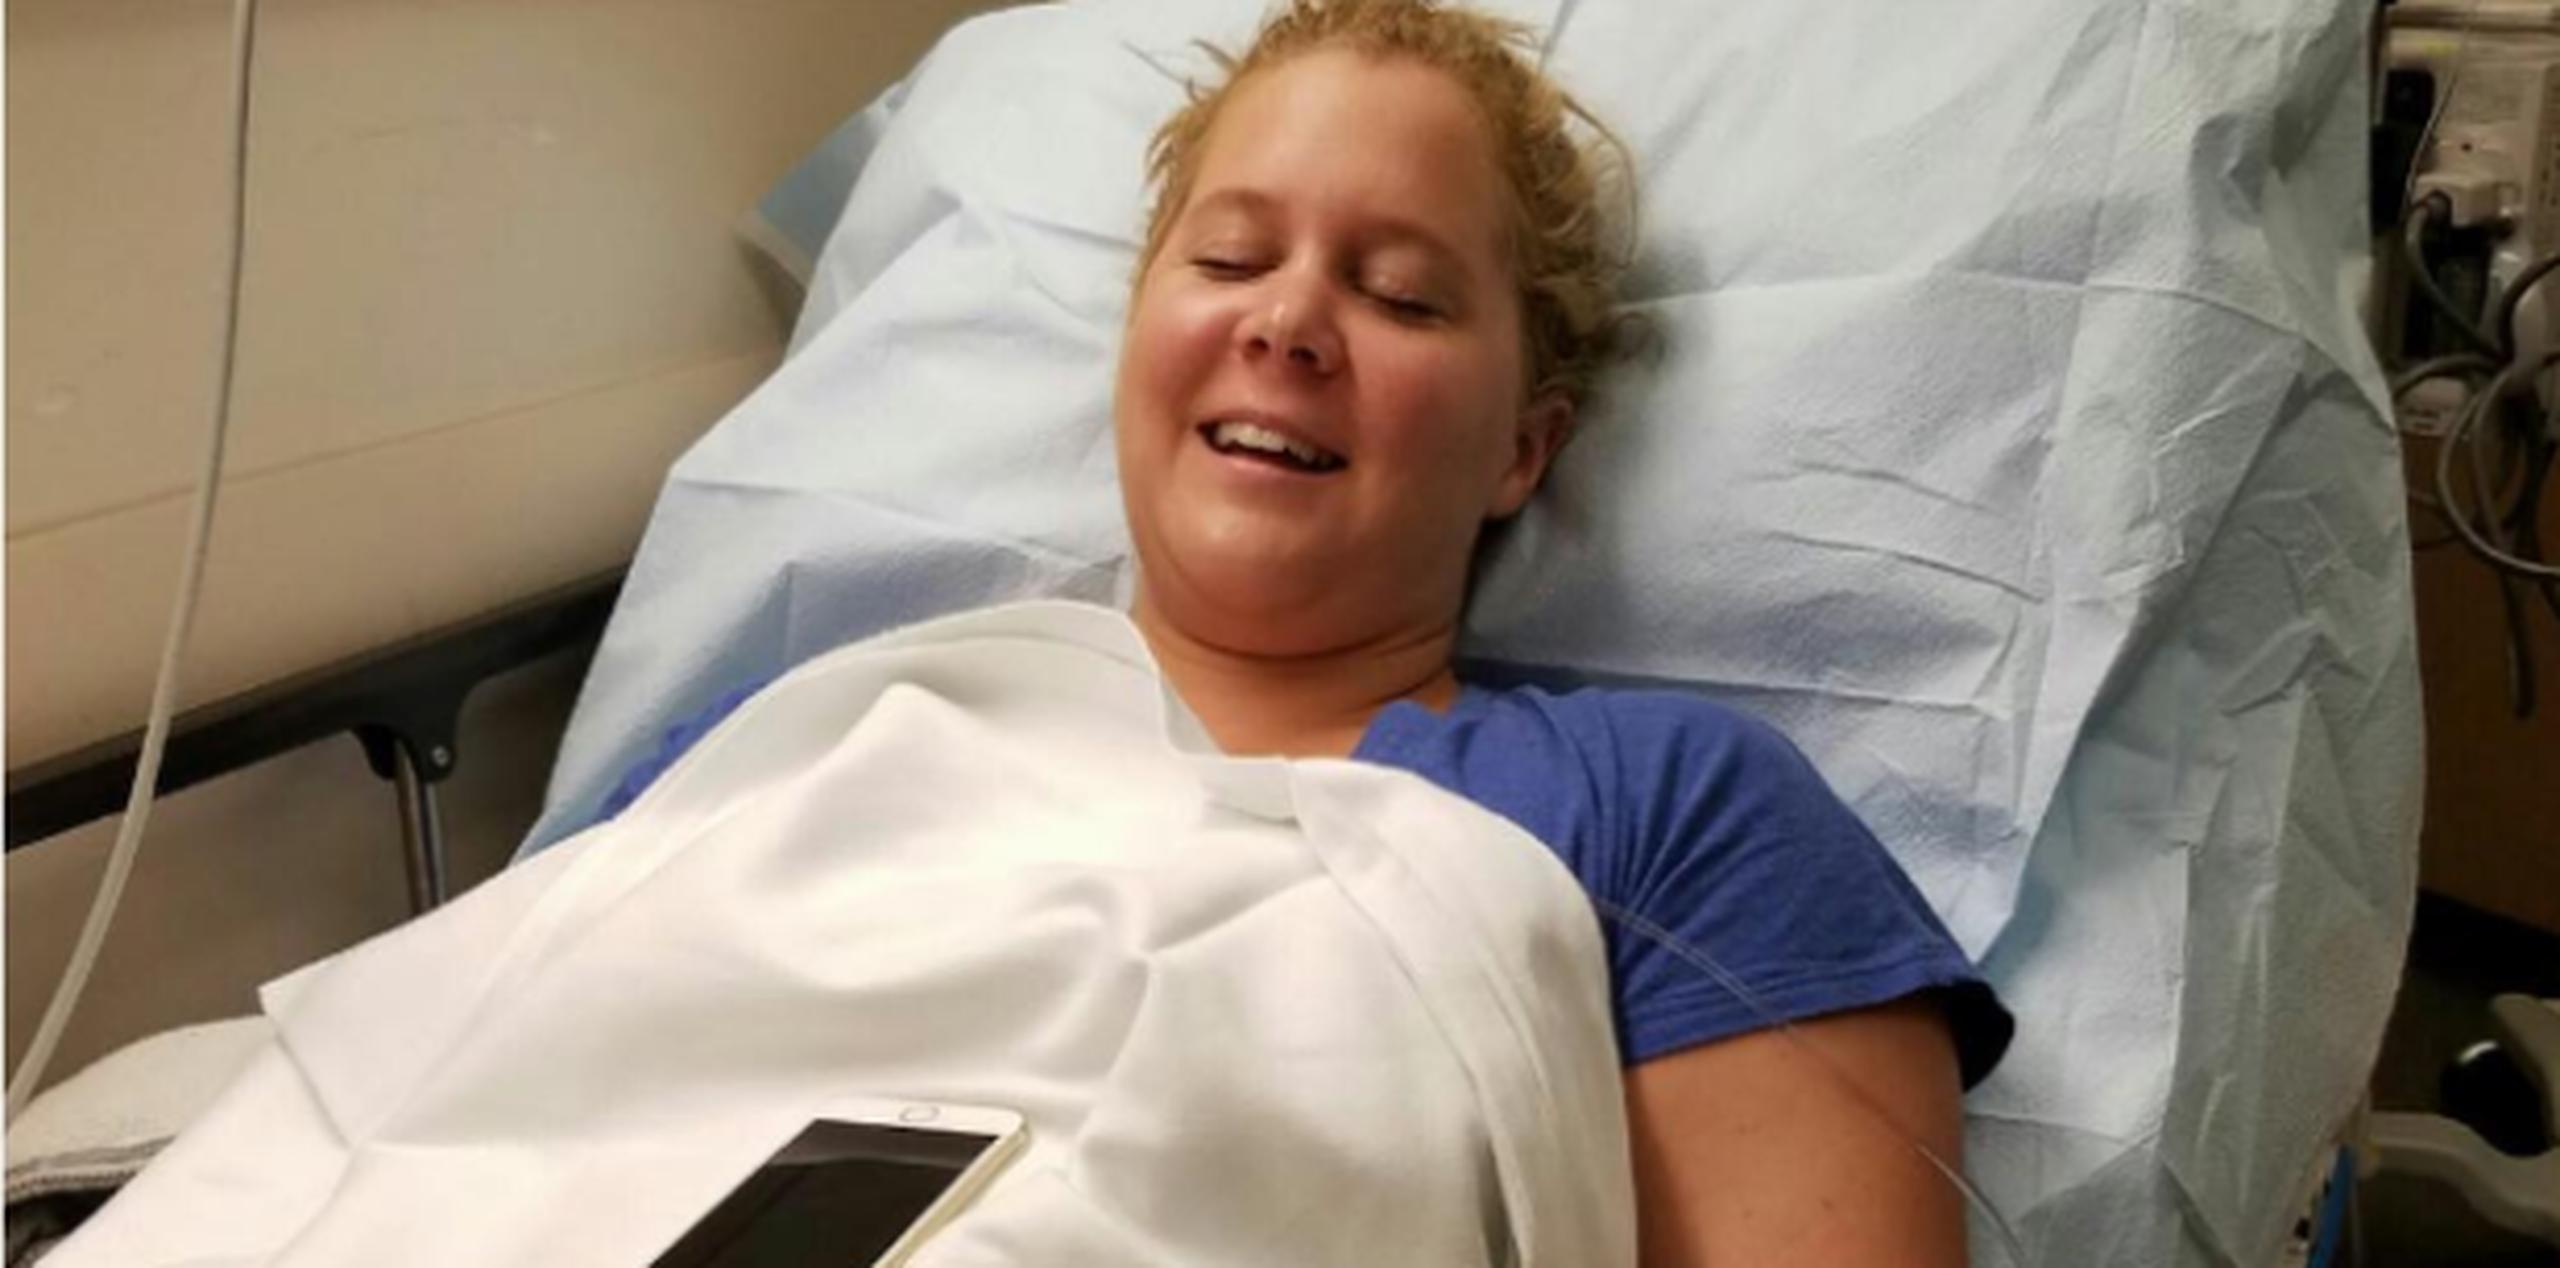 Schumer compartió imágenes de ella acostada en una camilla del hospital. (Instagram)